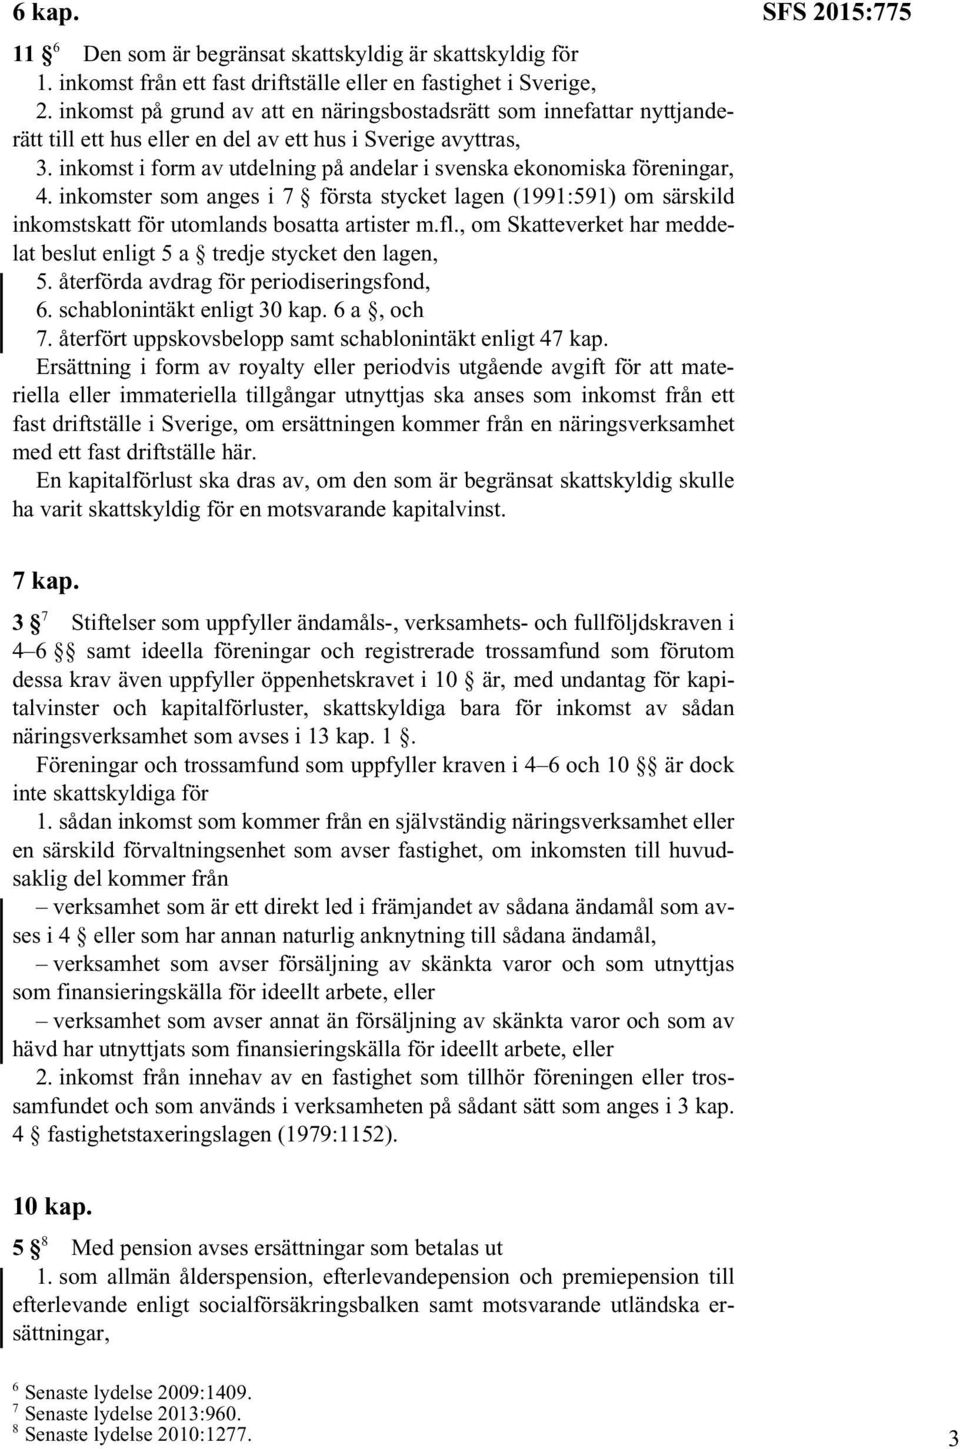 inkomst i form av utdelning på andelar i svenska ekonomiska föreningar, 4. inkomster som anges i 7 första stycket lagen (1991:591) om särskild inkomstskatt för utomlands bosatta artister m.fl.